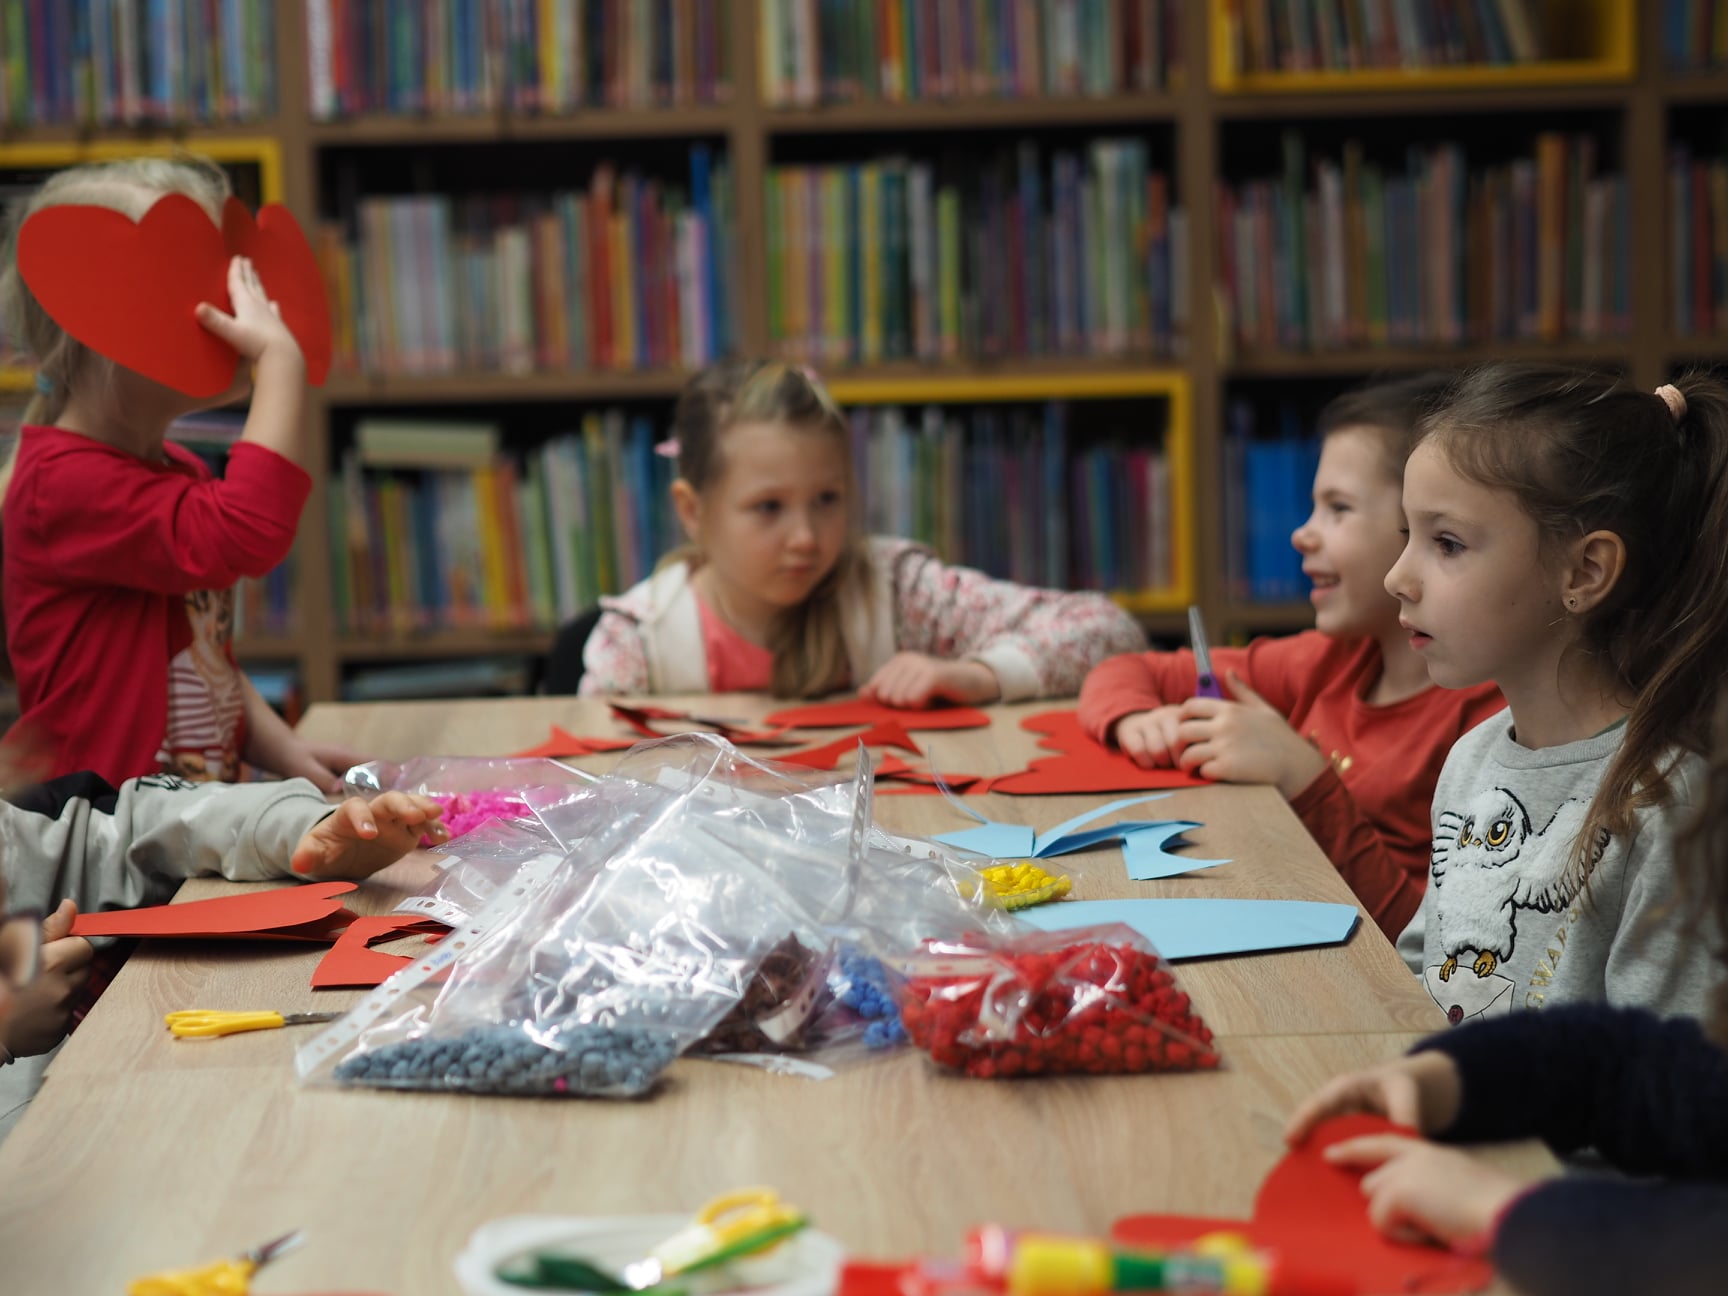 Zdjęcie zostało zrobione w bibliotece podczas zajęć plastycznych Dzieci siedzą wokół stołu. Na stole są różne papiery. i ozdoby.